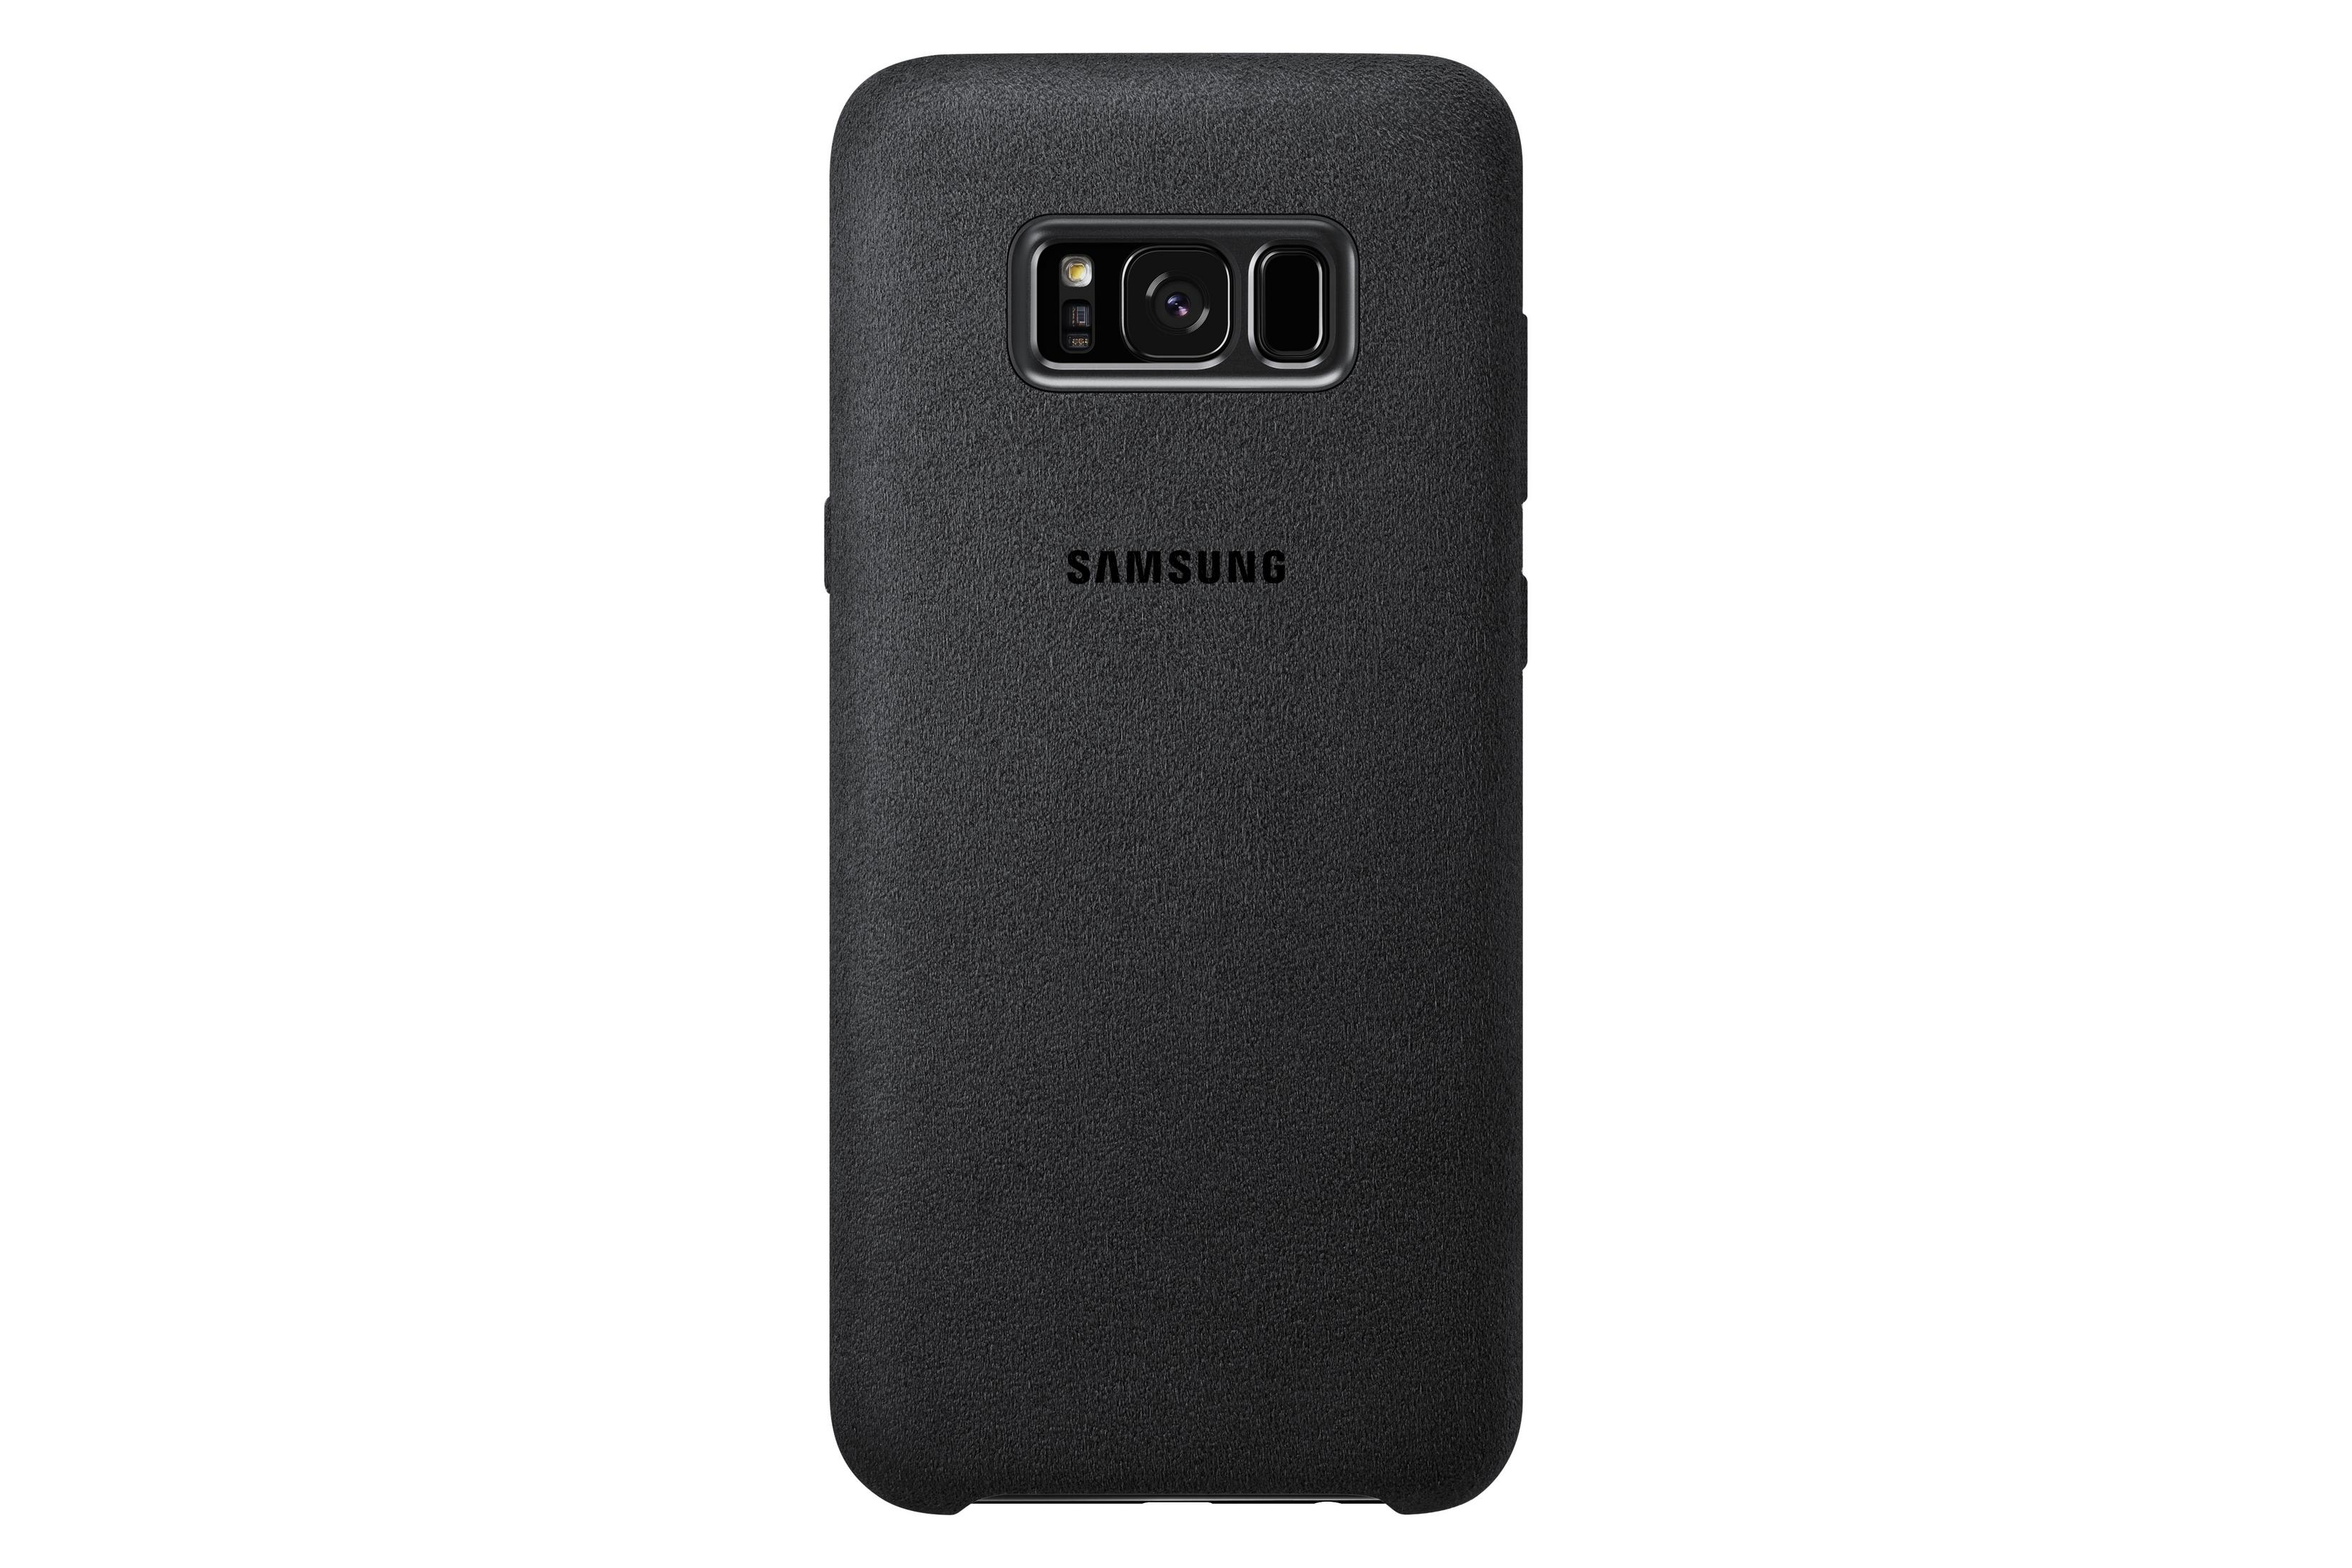 Galaxy GAL. Dark EF-XG955ASEGWW SILBERGRAU, S8+ S8+, Gray COVER ALCANTARA Backcover, Samsung, SAMSUNG